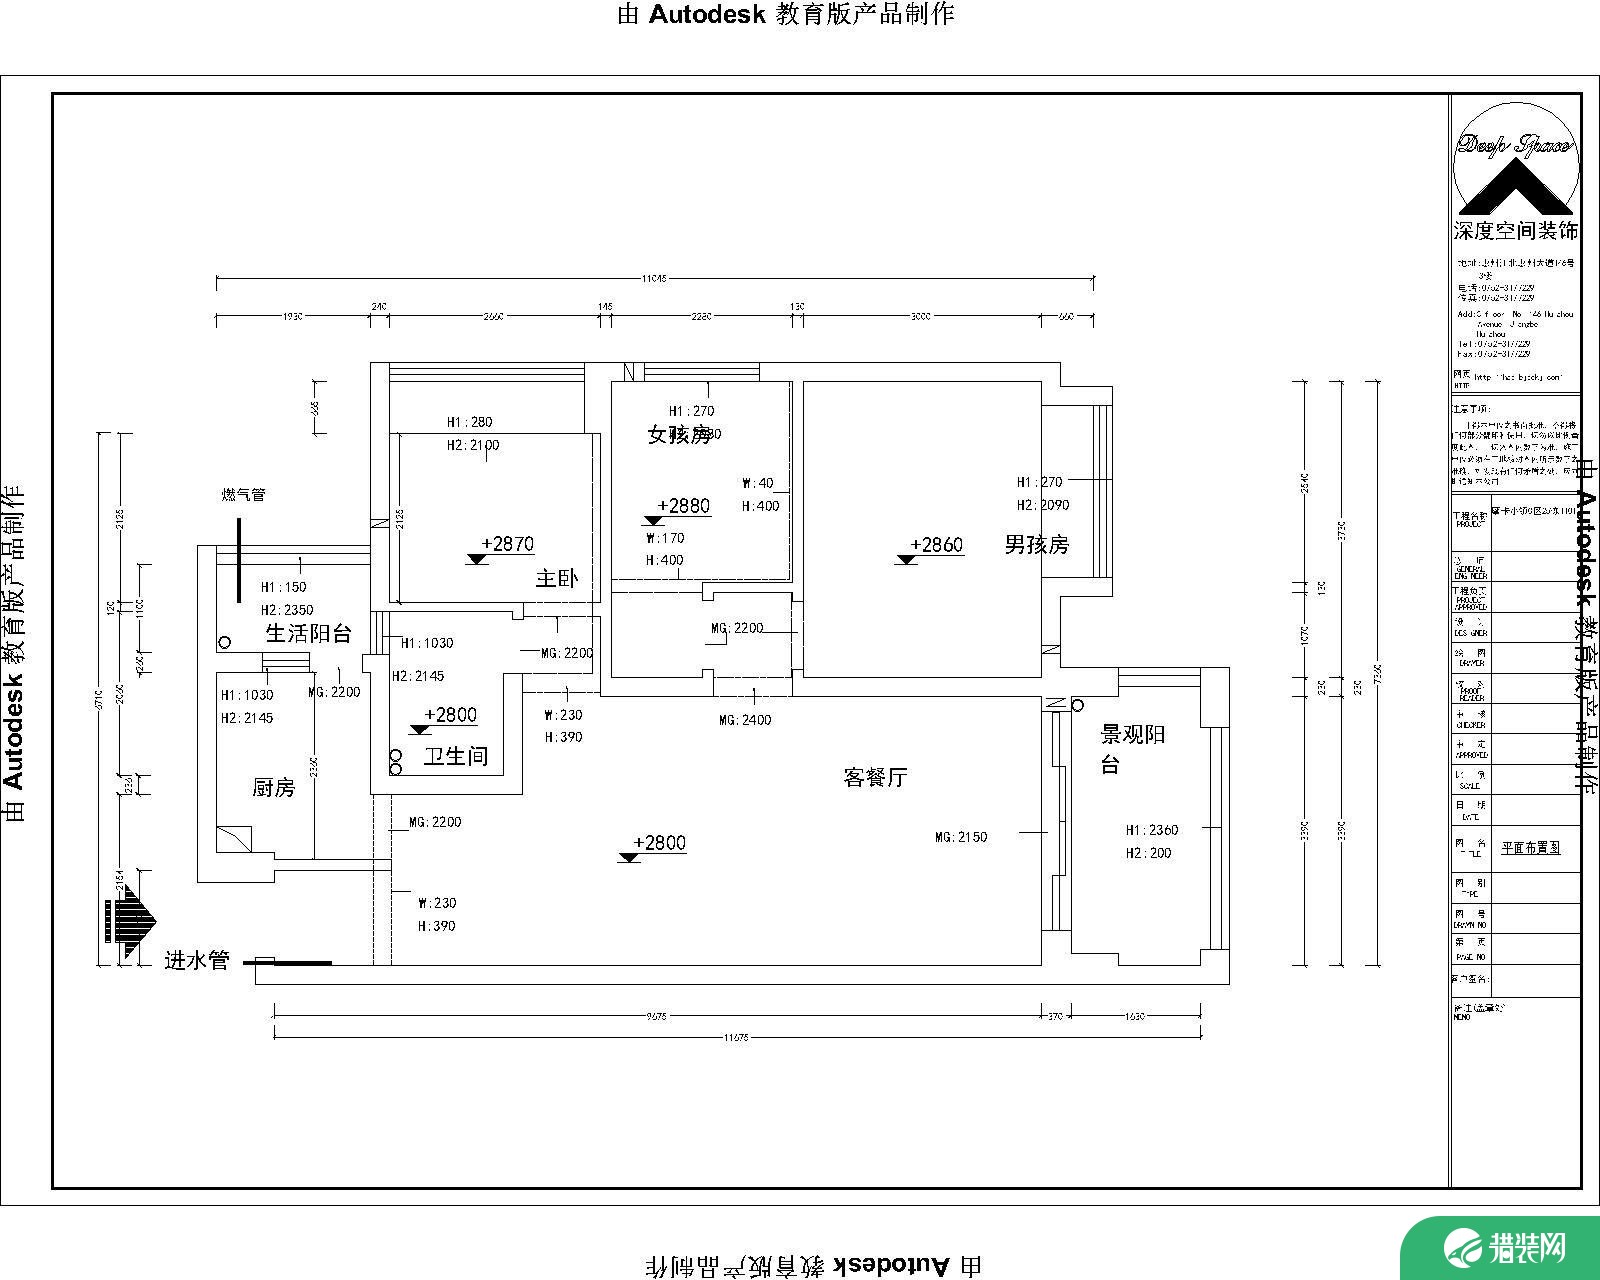 【深度空间】惠州摩卡小镇88㎡现代风格三室装修效果图